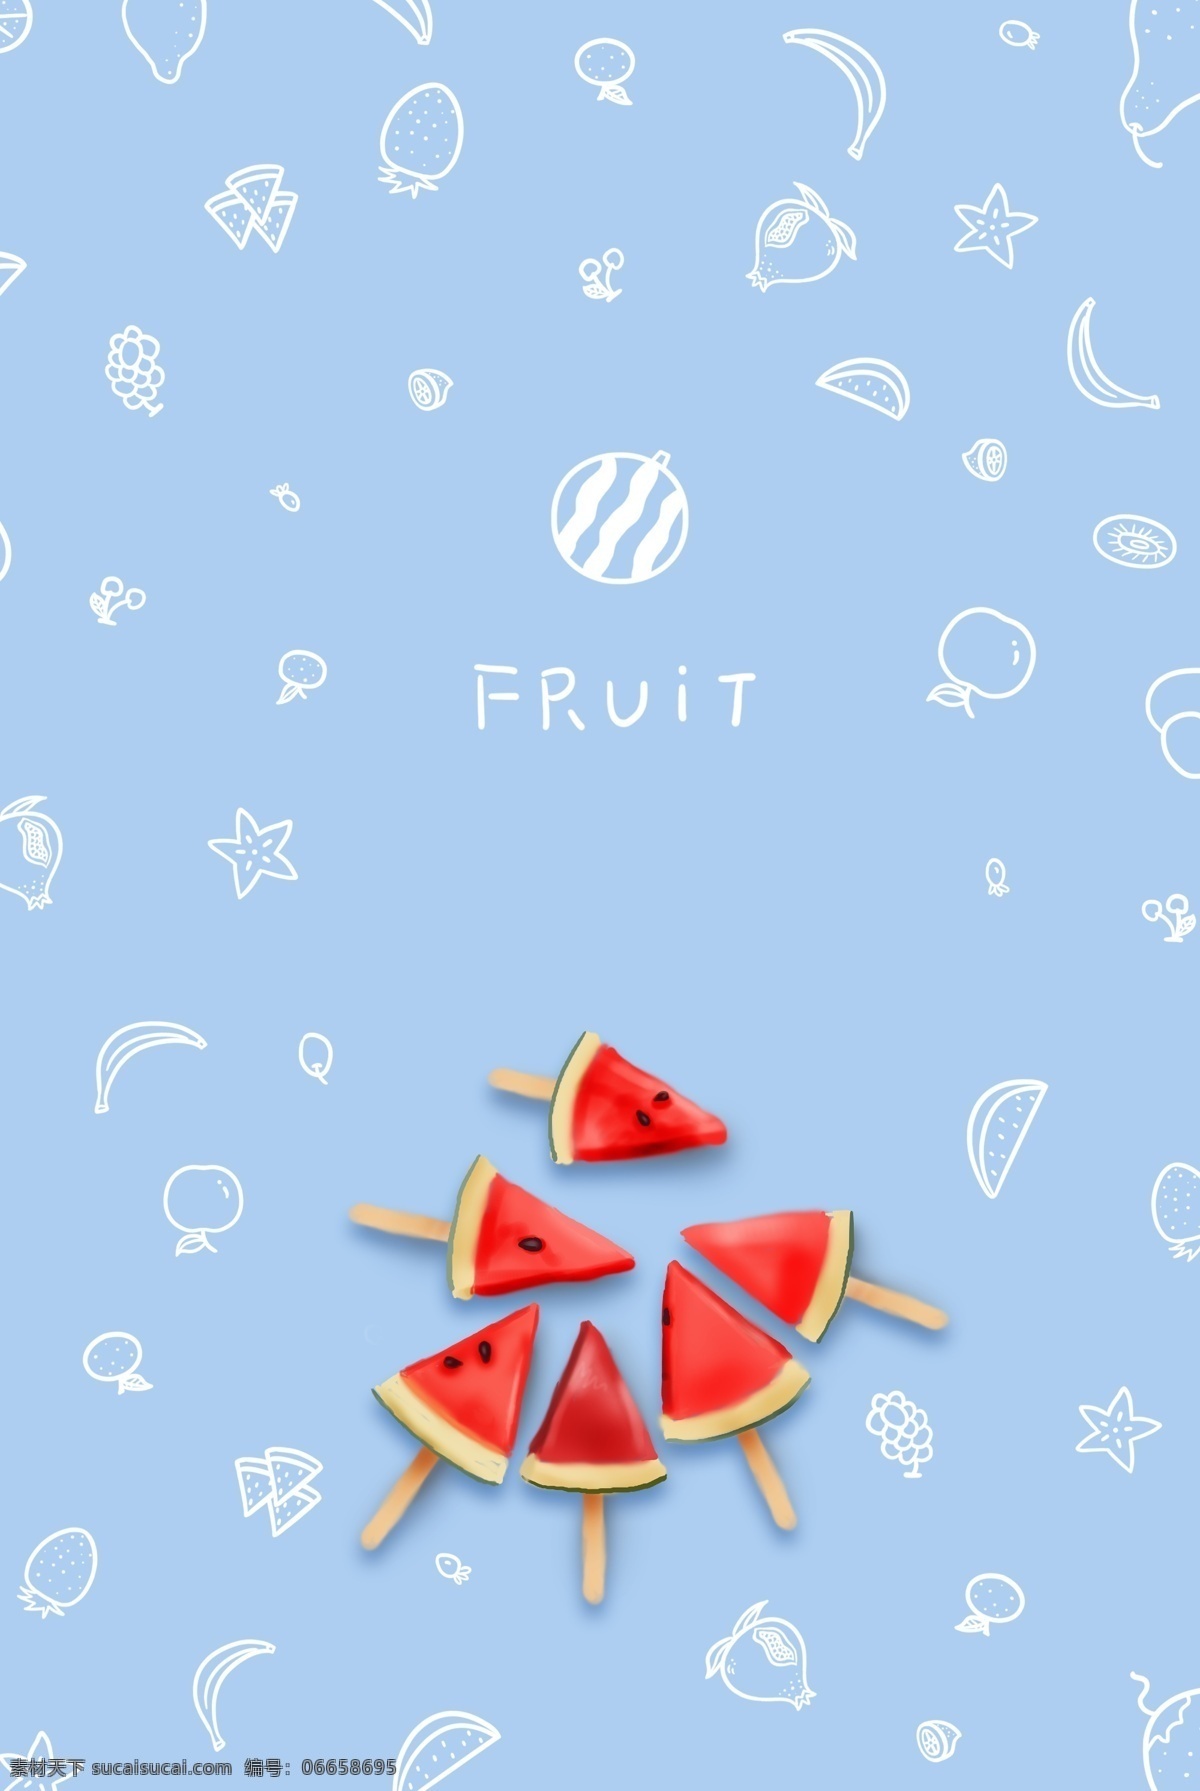 夏季 美味 水果 清新 海报 夏天 夏日 果树 西瓜 清凉 冰镇 粉色